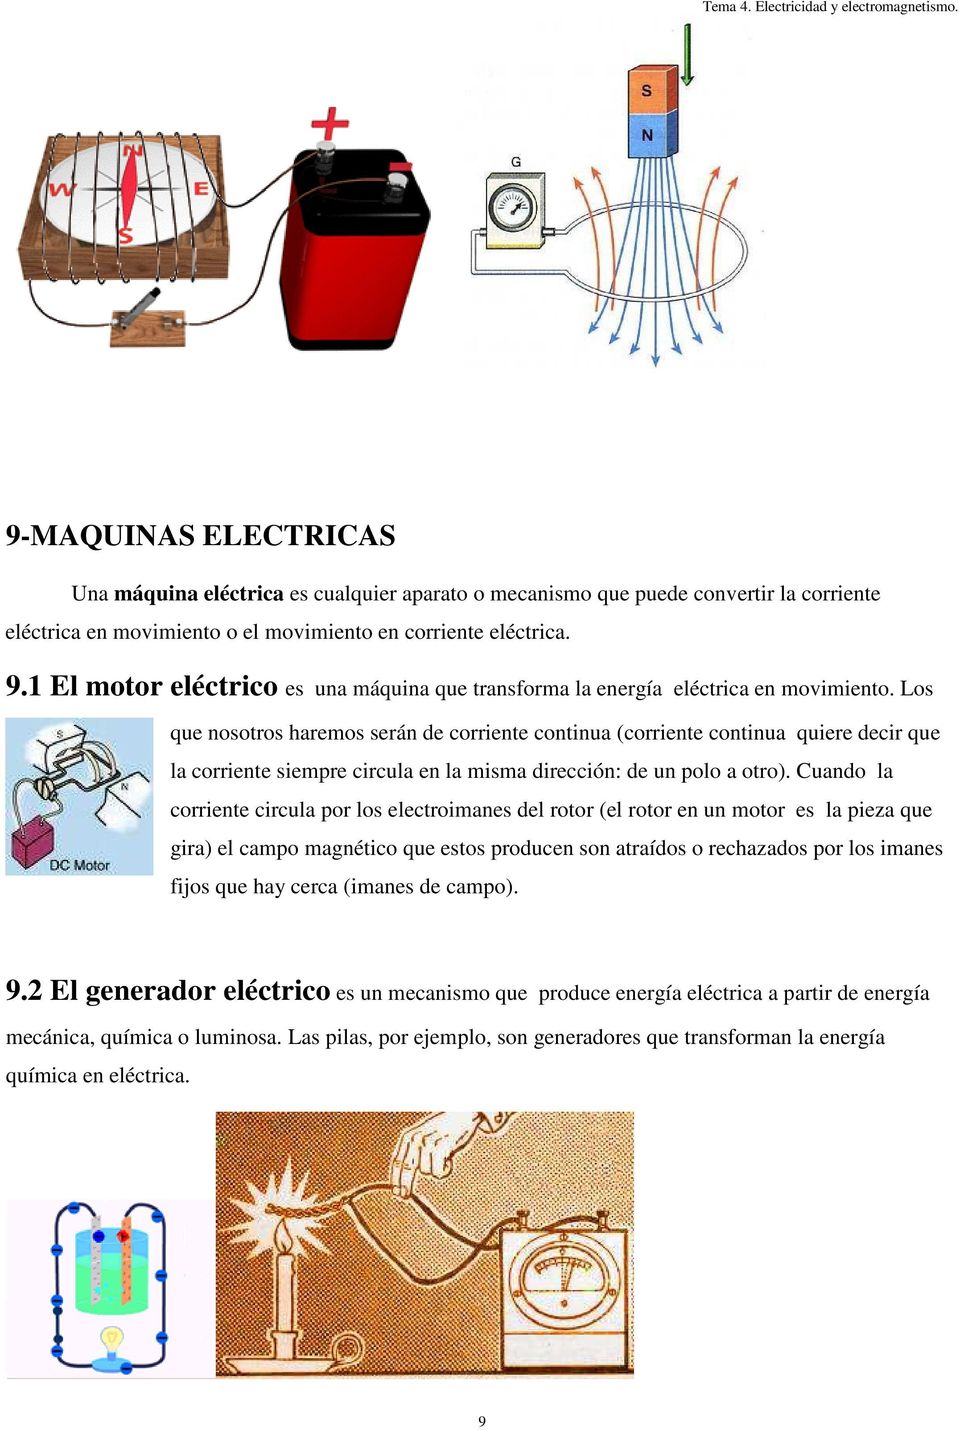 1 El motor eléctrico es una máquina que transforma la energía eléctrica en movimiento.